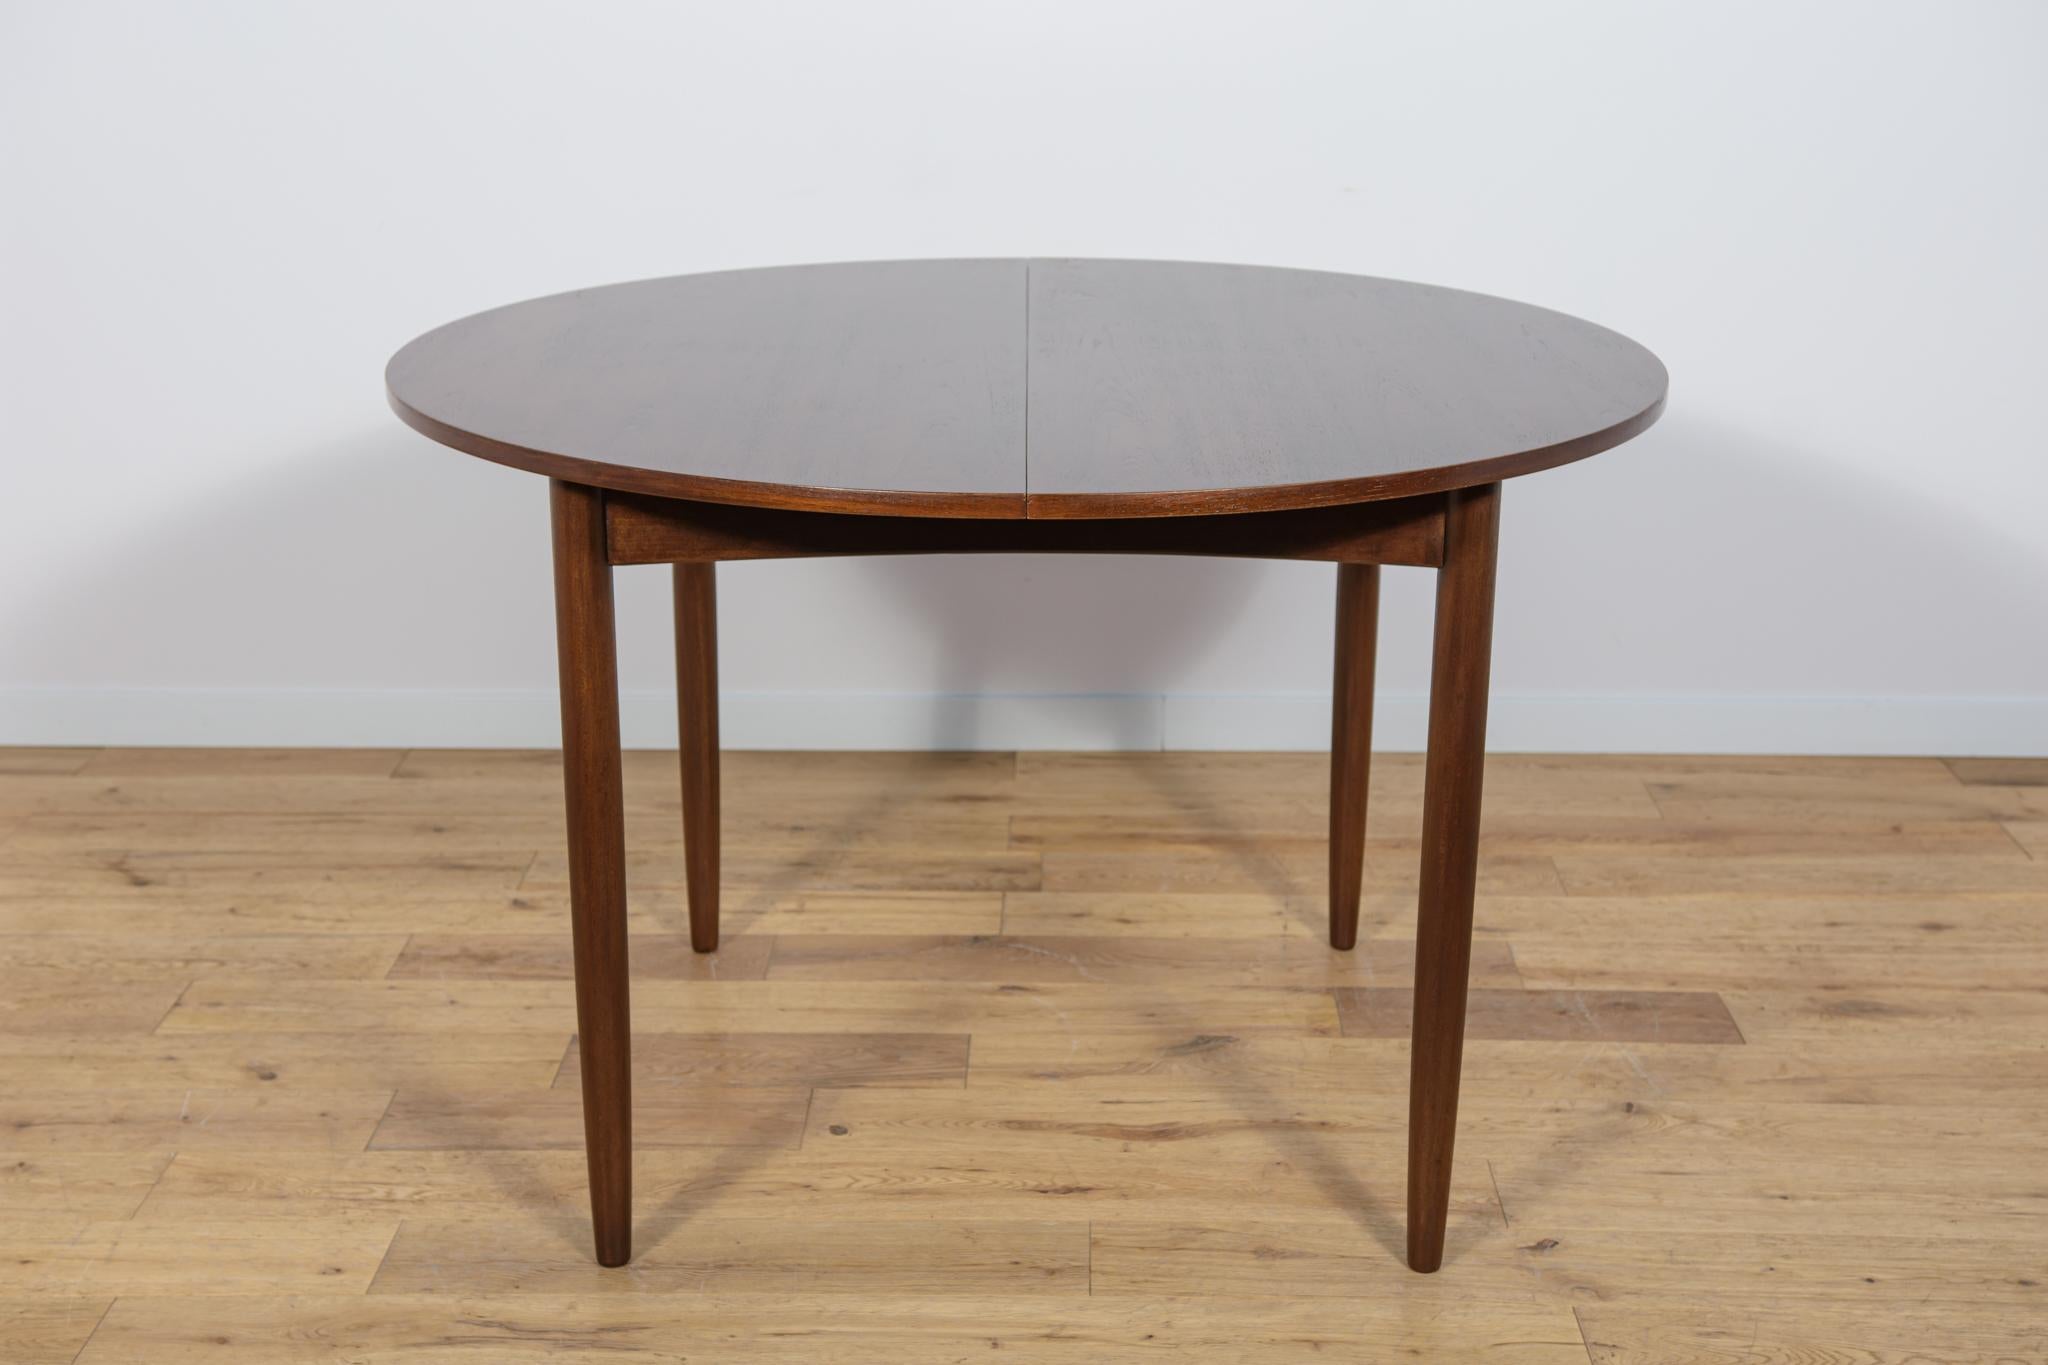 Cette table de salle à manger ronde extensible a été produite par G-Plan dans les années 1960. Les éléments en teck sont nettoyés de l'ancienne surface et peints dans une teinture de chêne et finis avec une laque résistante. La table est dotée d'un